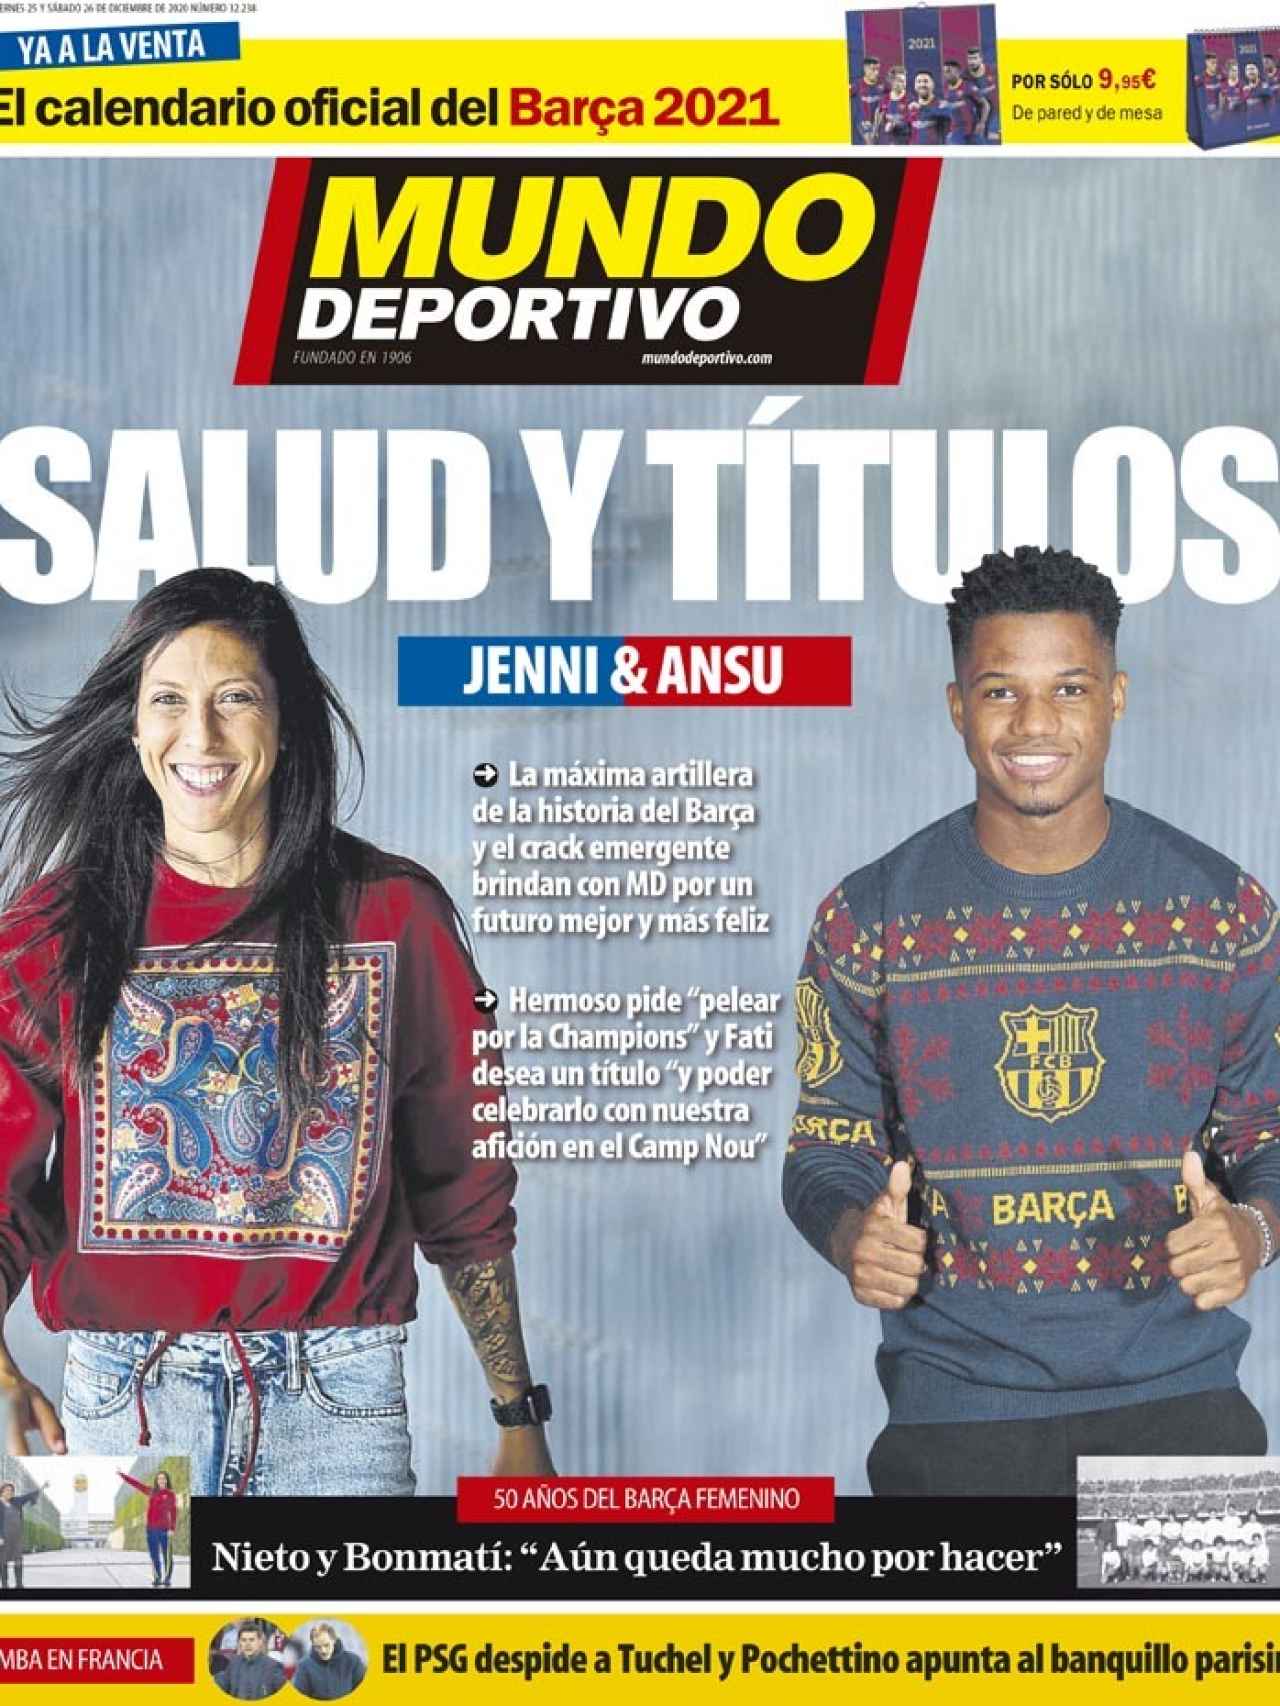 La portada del diario Mundo Deportivo (26/12/2020)